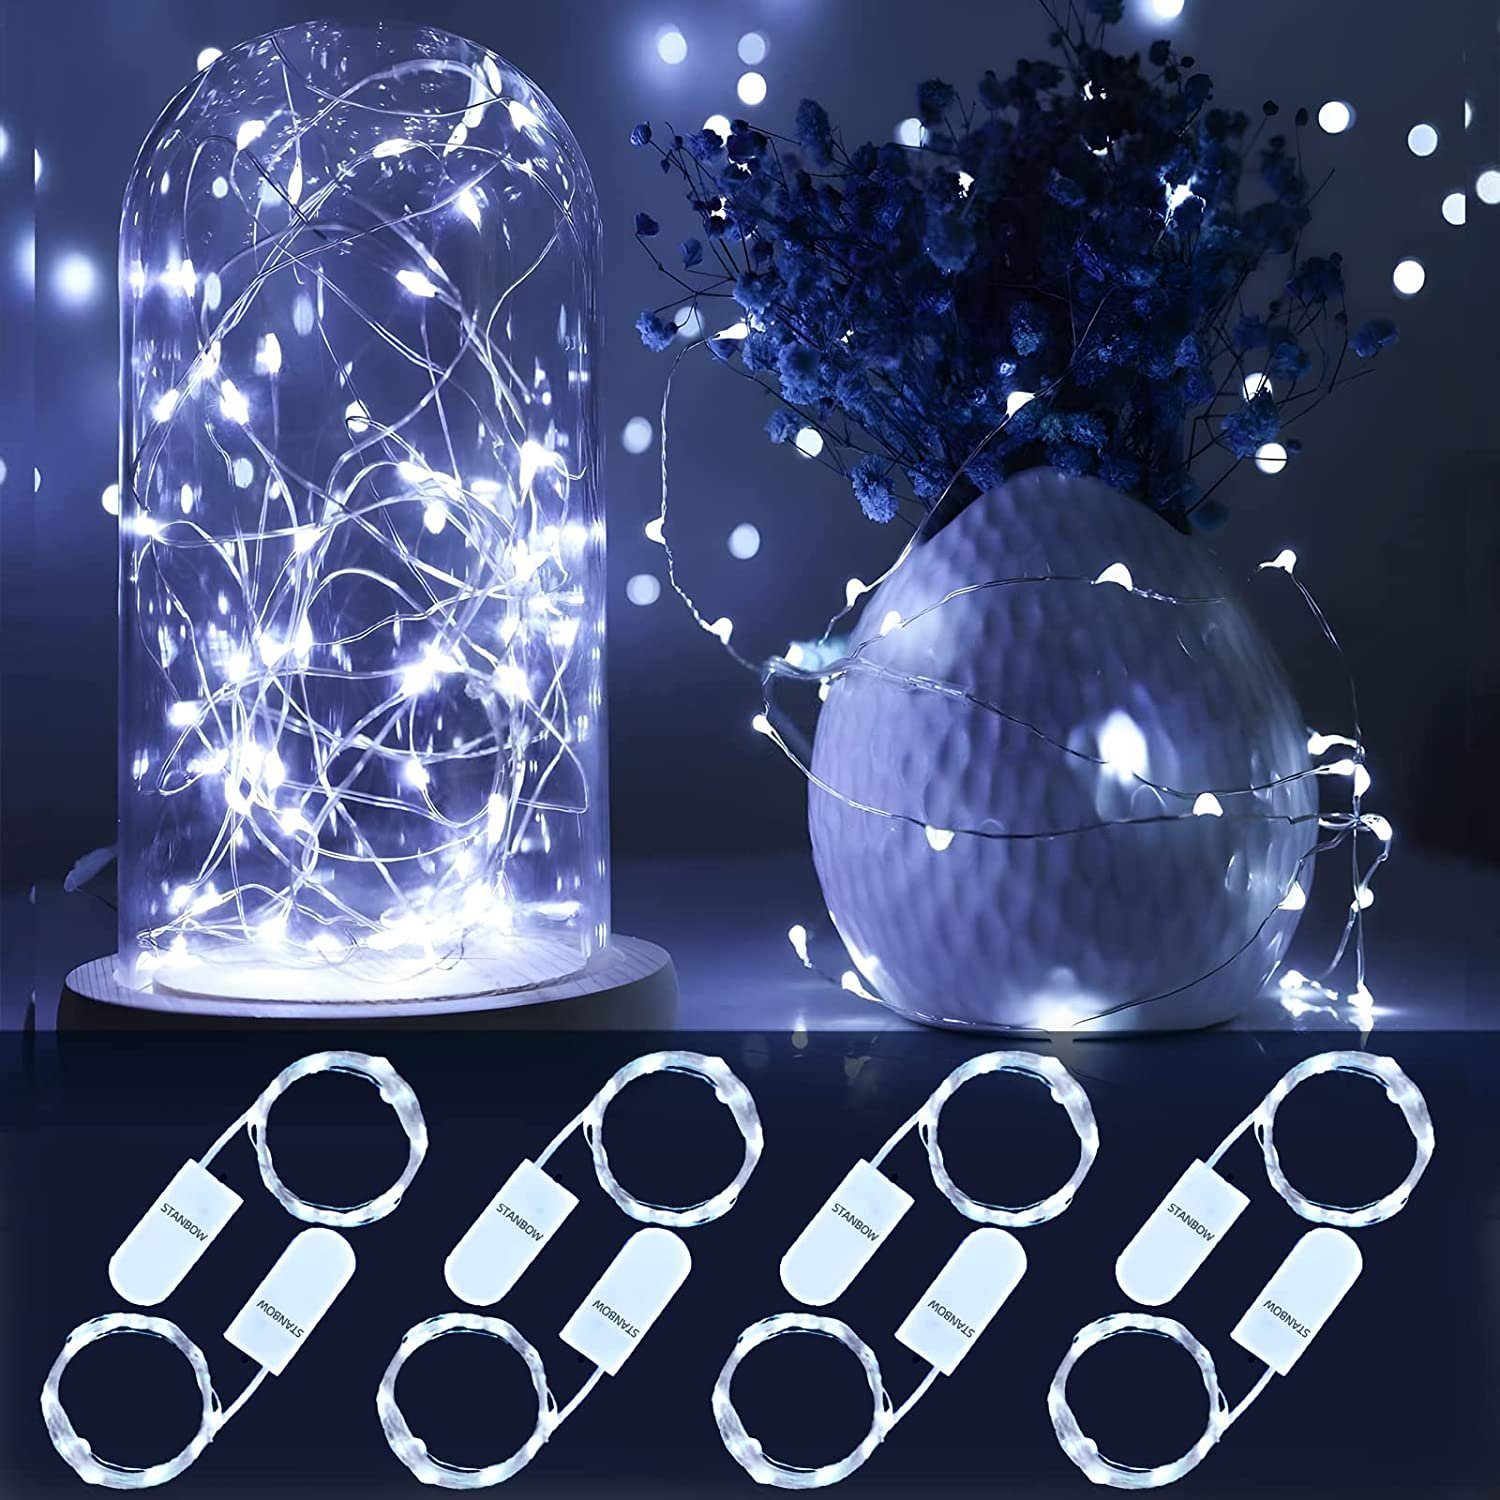 Nettlife LED-Lichterkette 8er-Pack Kupferdraht Batteriebetriebene Weihnachtsdekoration Kalteweiß Lichter, 2M